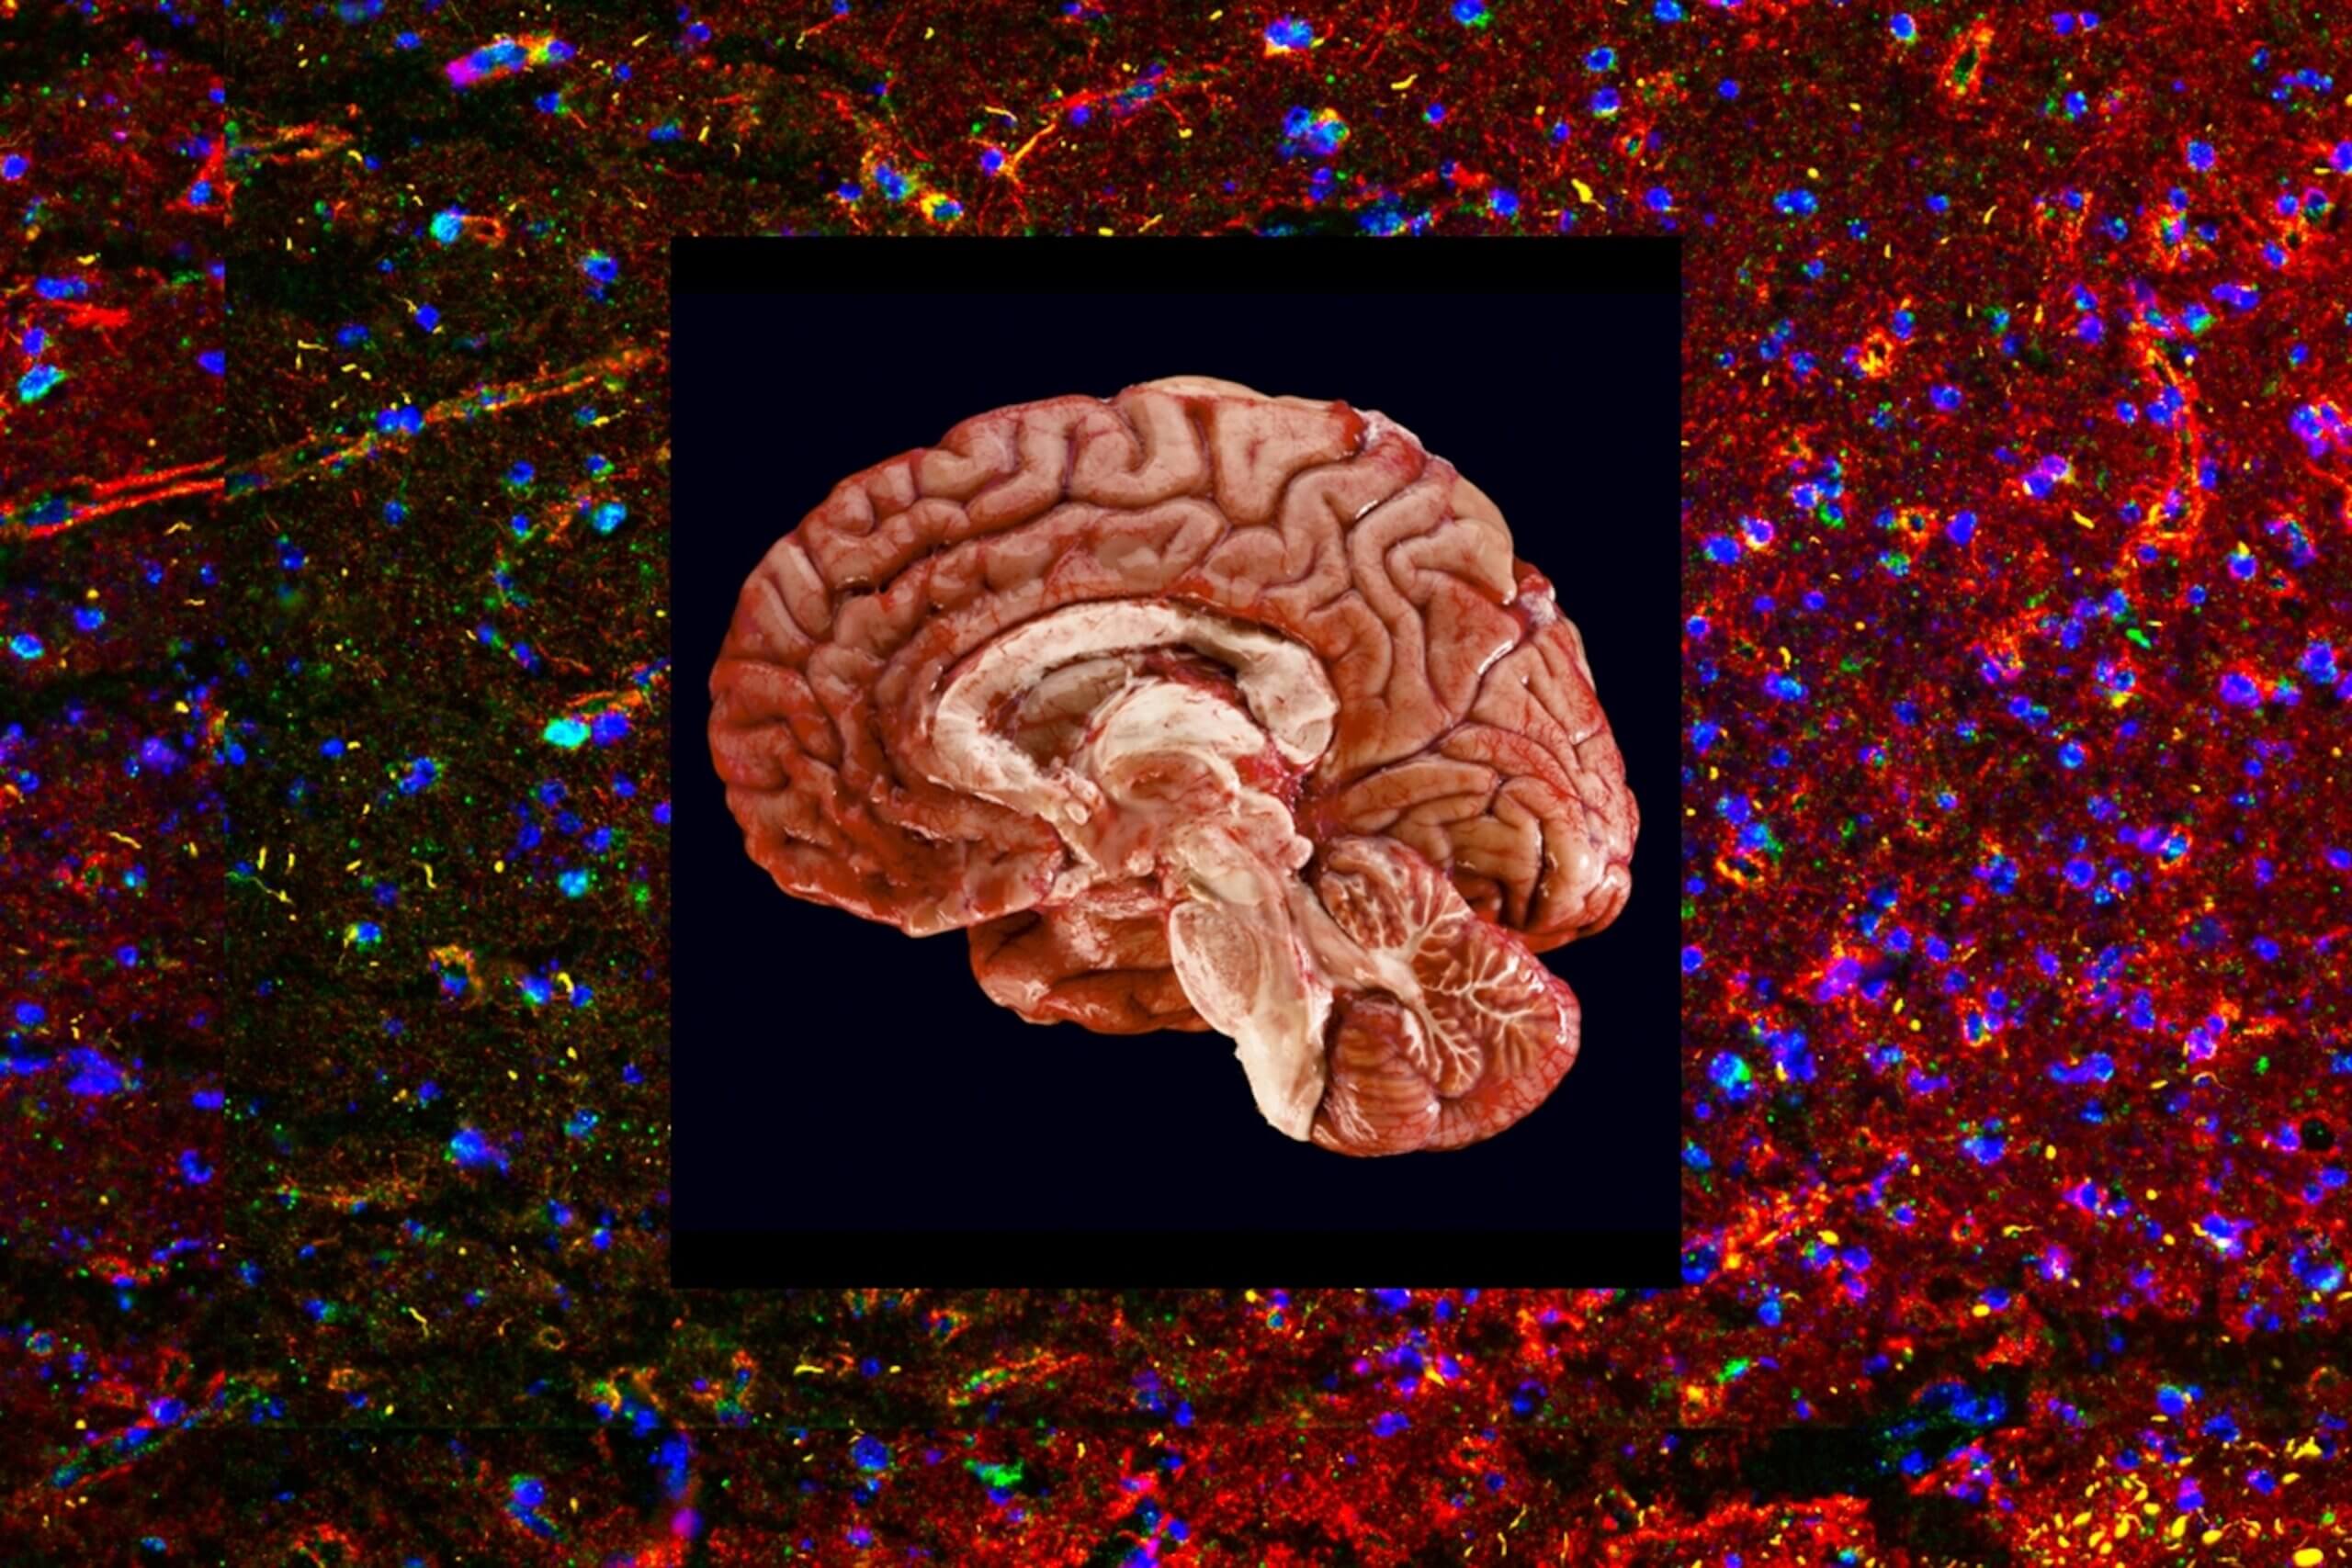 Что такое зомби-нейроны и как они помогают мозгу учиться? В мозге обнаружены так называемые «зомби-нейроны». Что это такое? Изображение: /i.natgeofe.com. Фото.